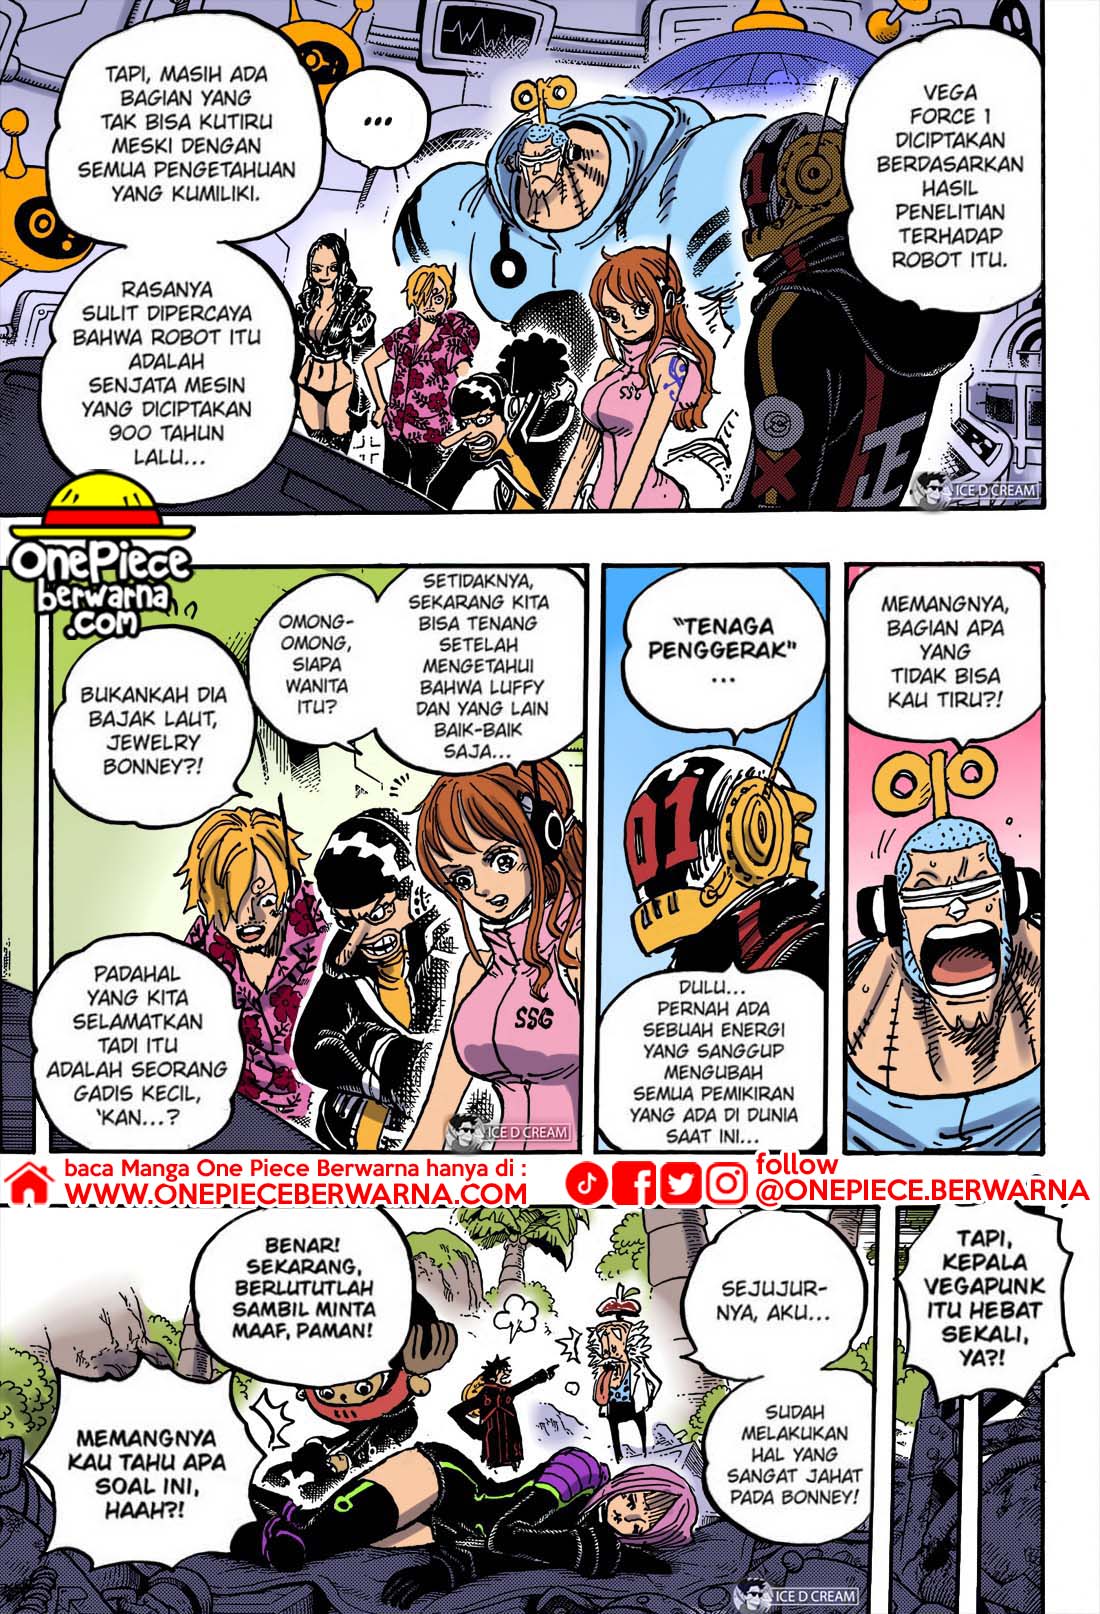 Baca manga komik One Piece Berwarna Bahasa Indonesia HD Chapter 1067